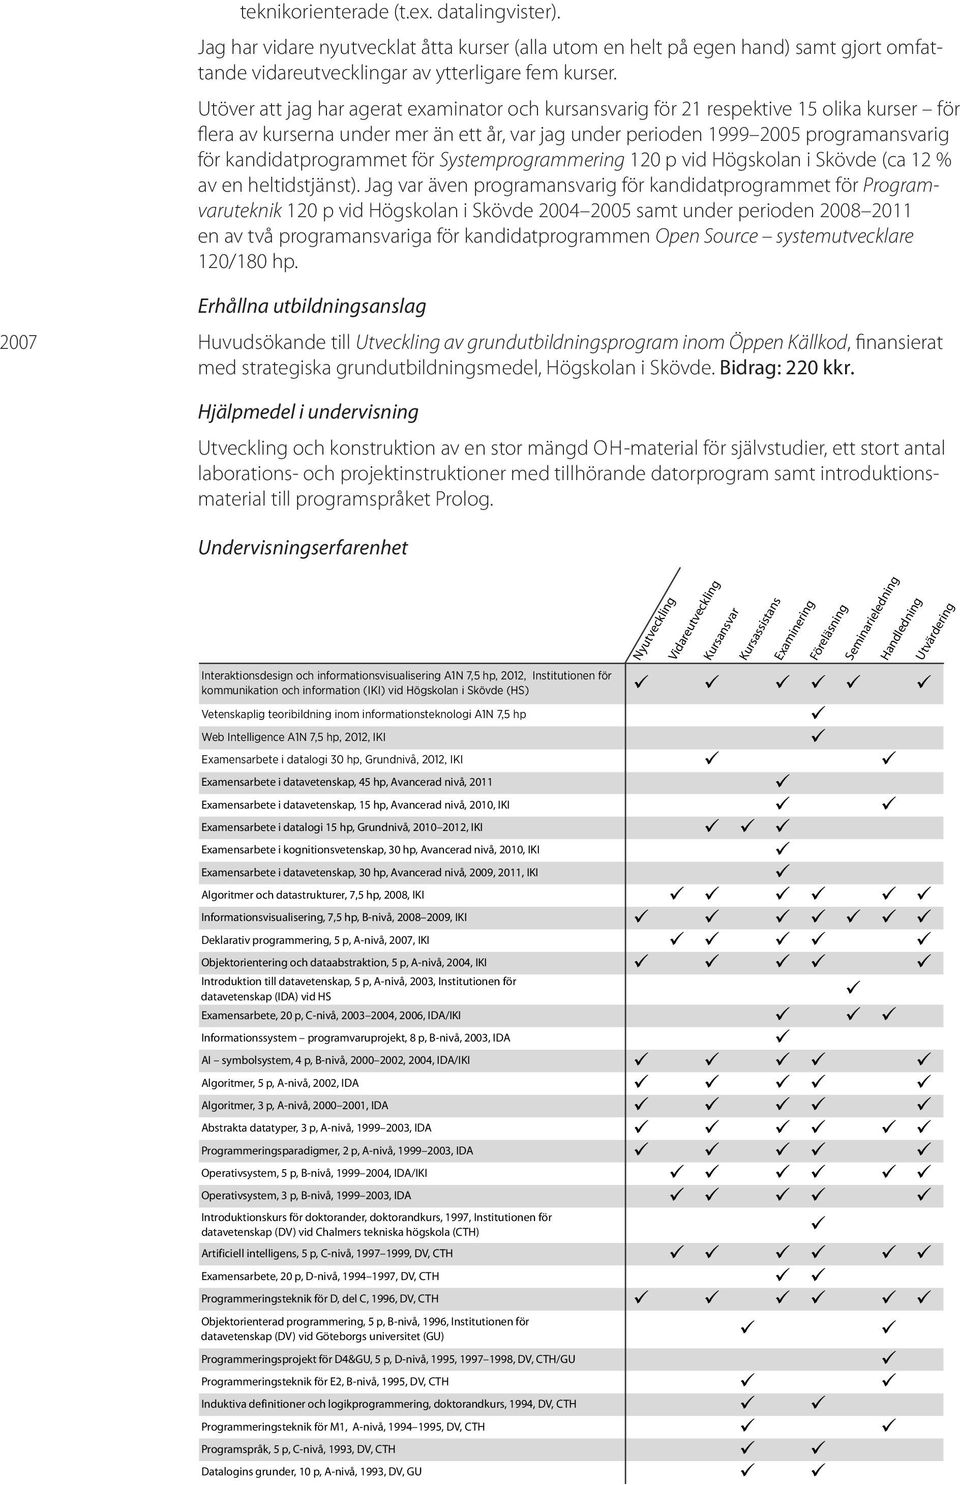 kandidatprogrammet för Systemprogrammering 120 p vid Högskolan i Skövde (ca 12 % av en heltidstjänst).